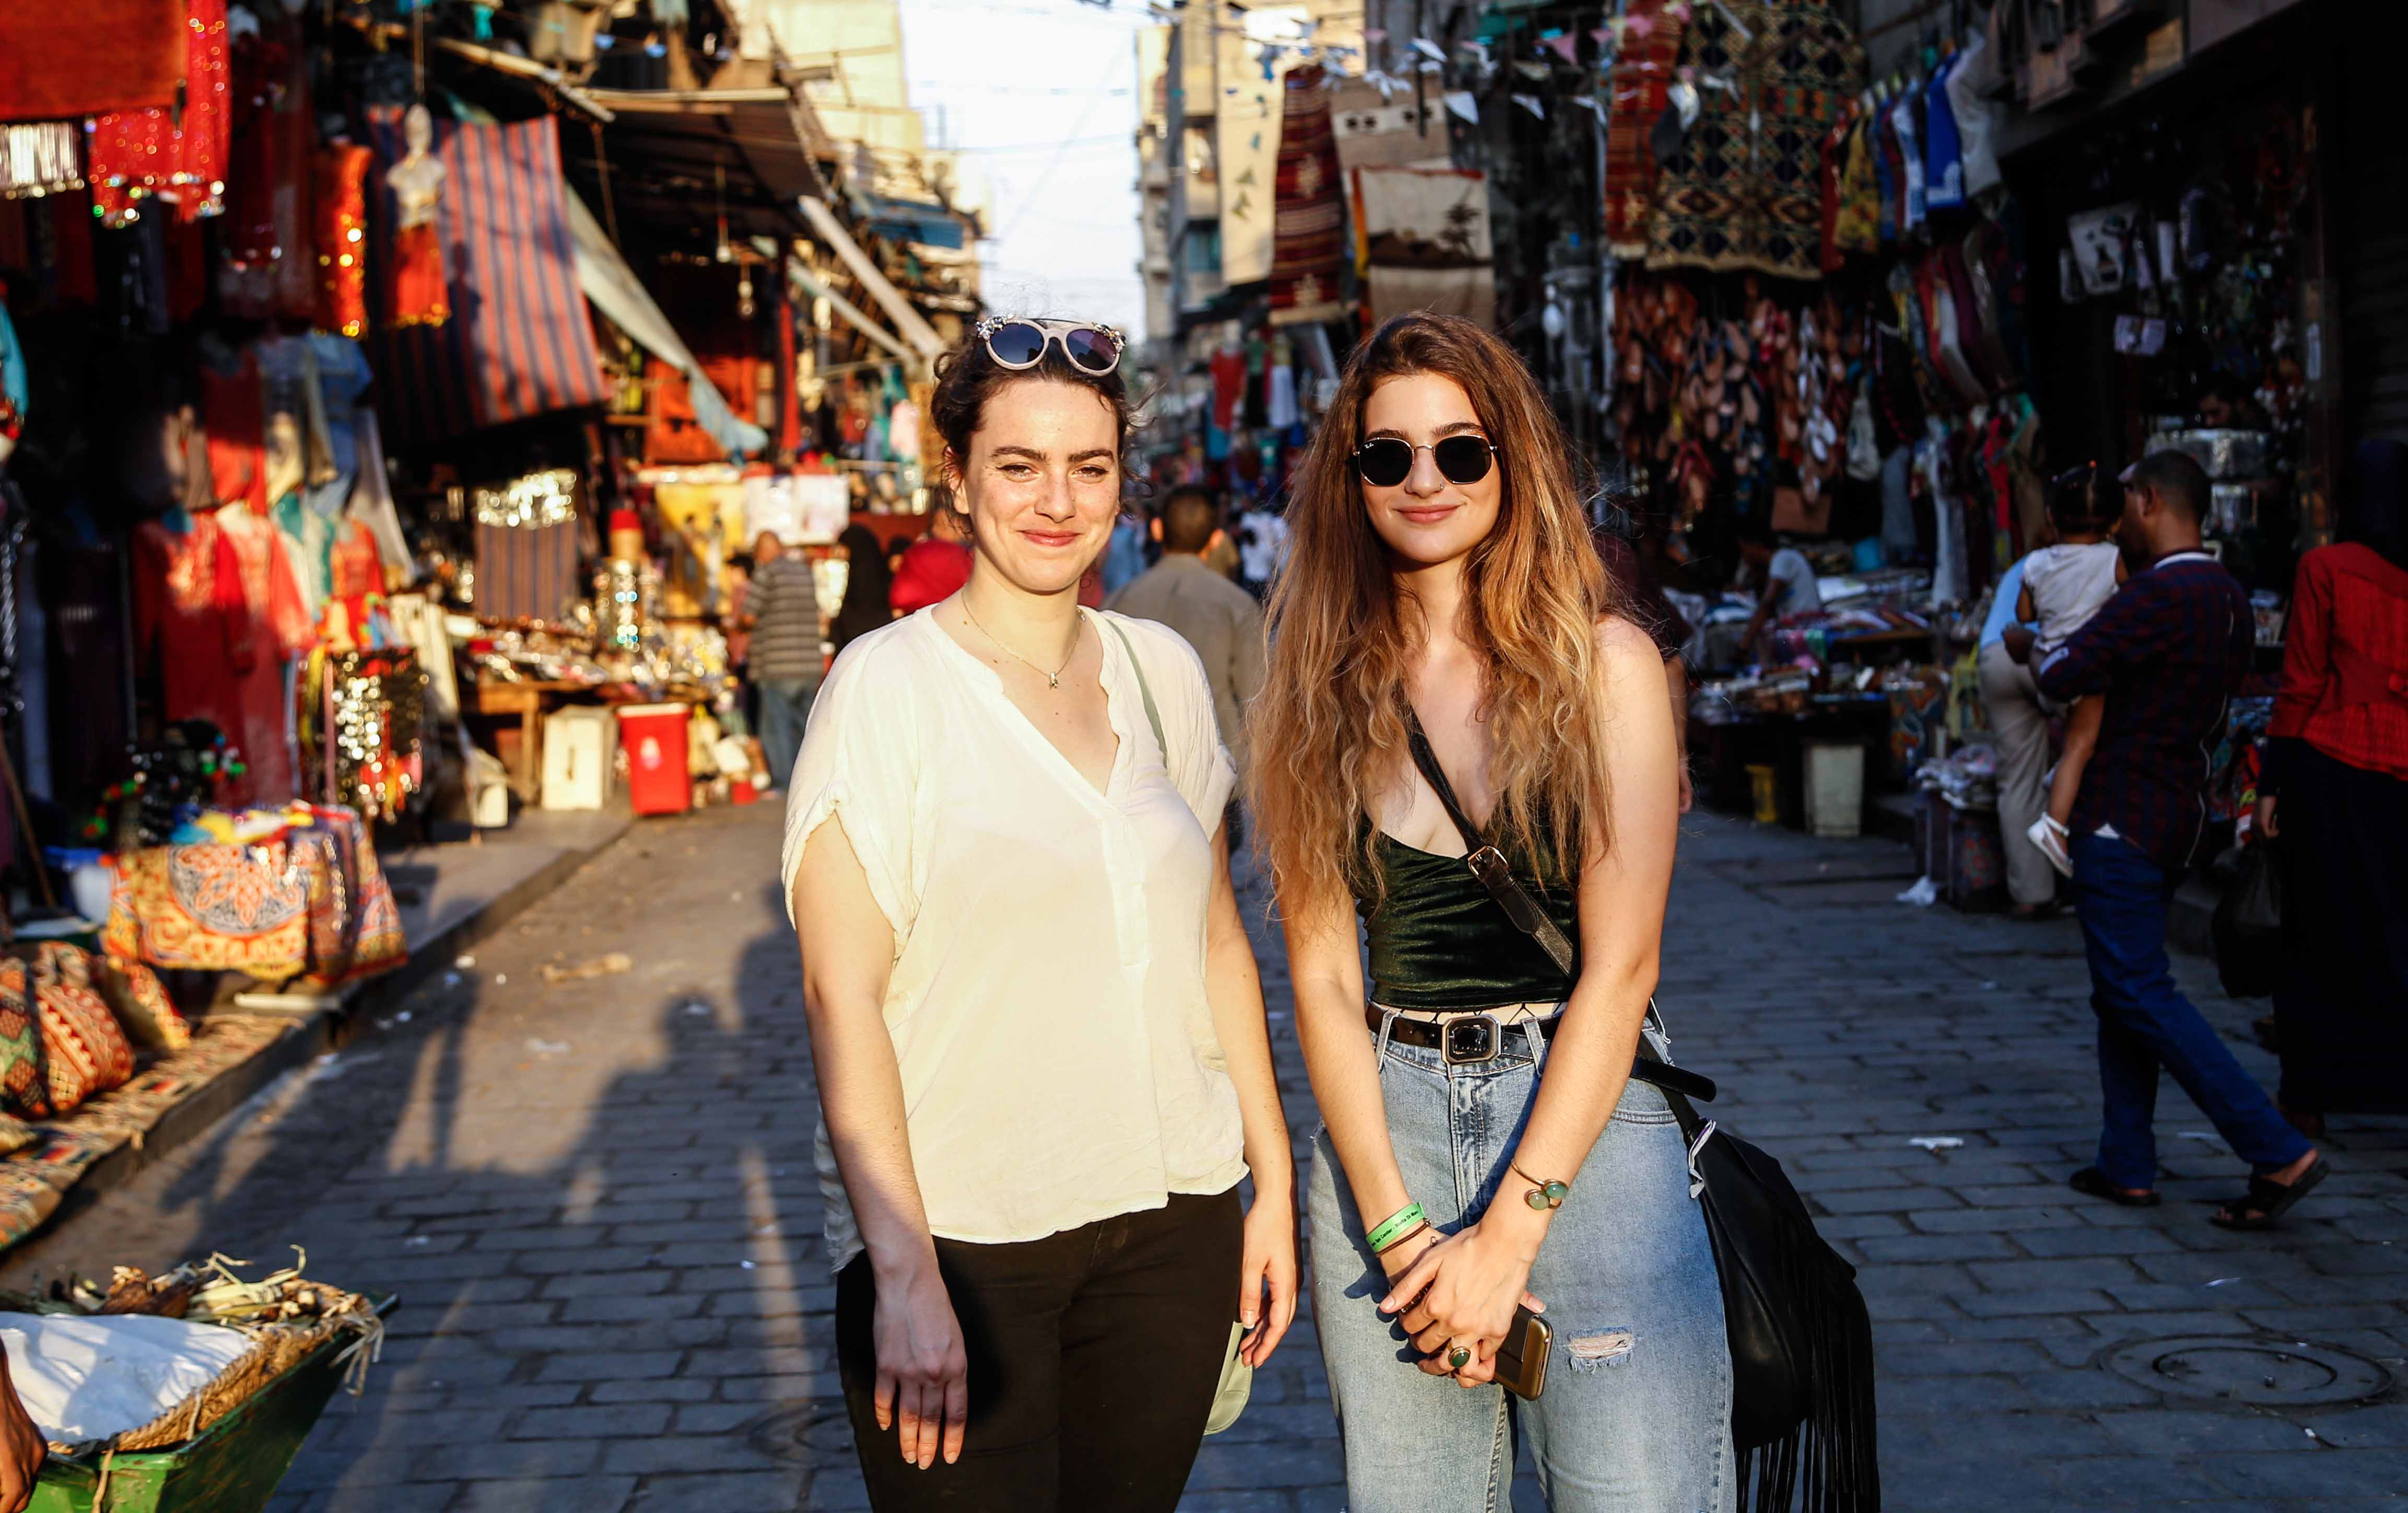 الفتاتان الأمريكيتان فى طرقات شوارع القاهرة القديمة